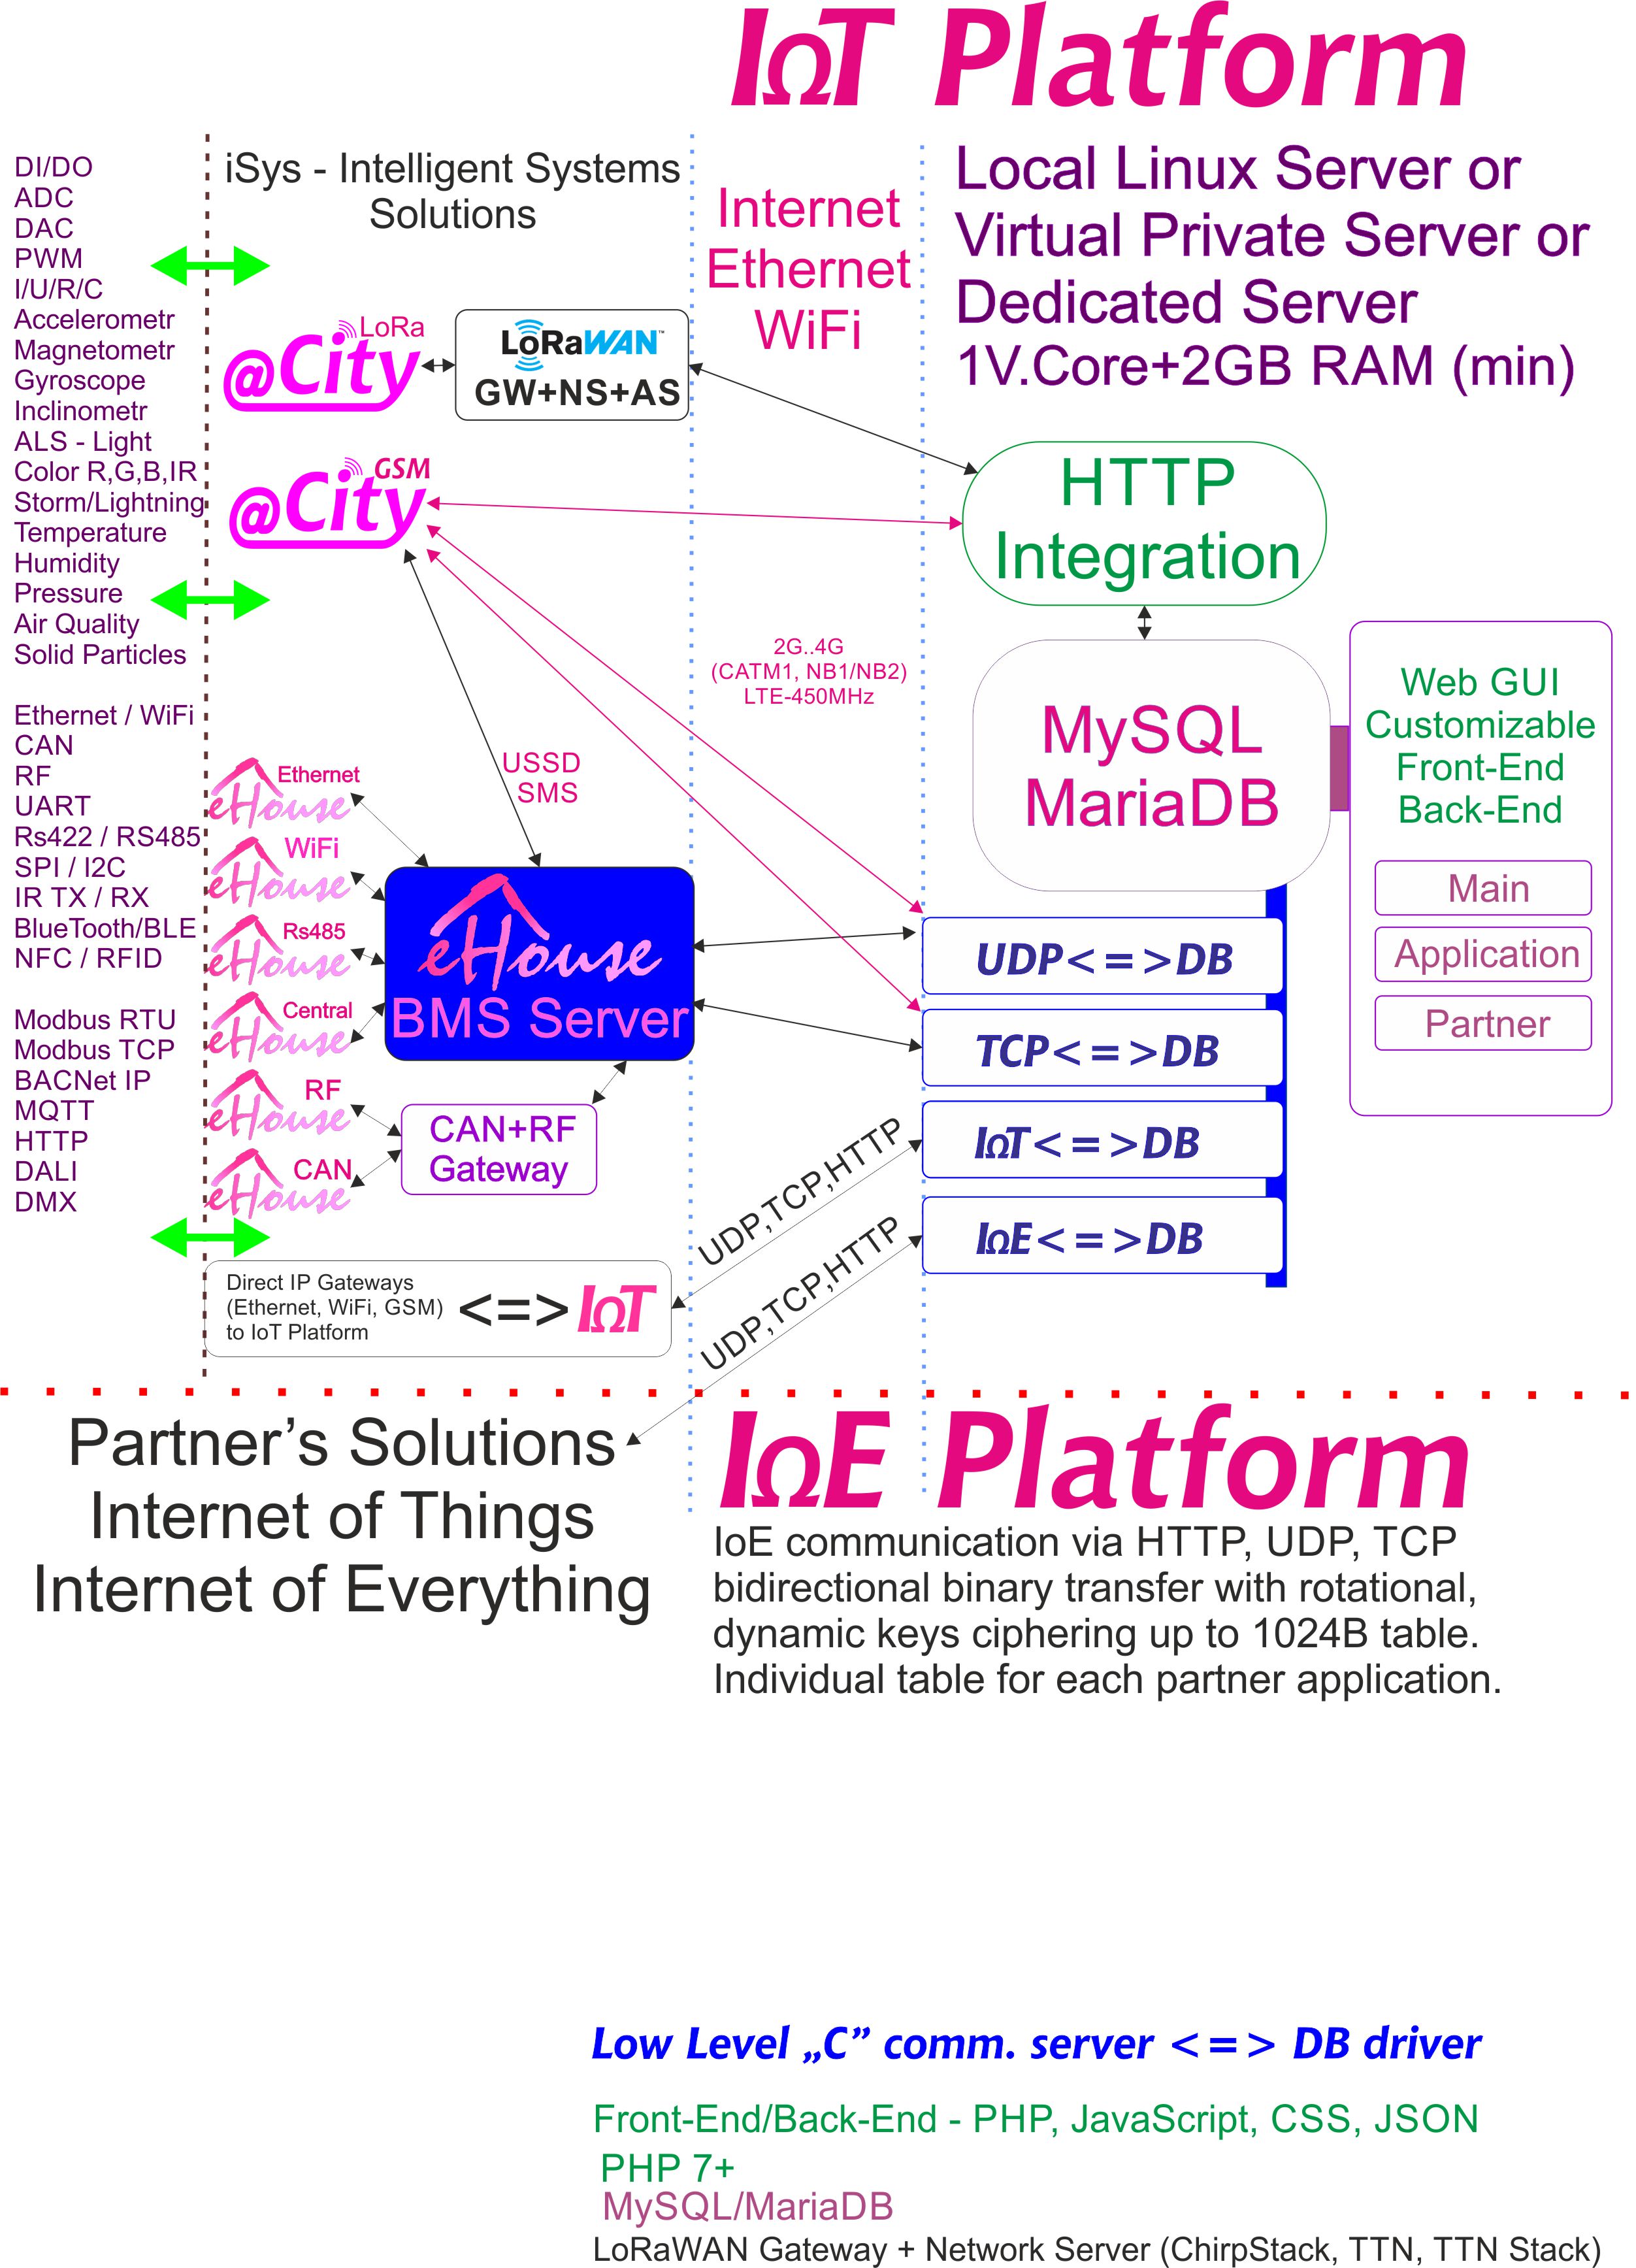 Az IoE, az IoT Platform minden partner számára külön titkosítással rendelkezik